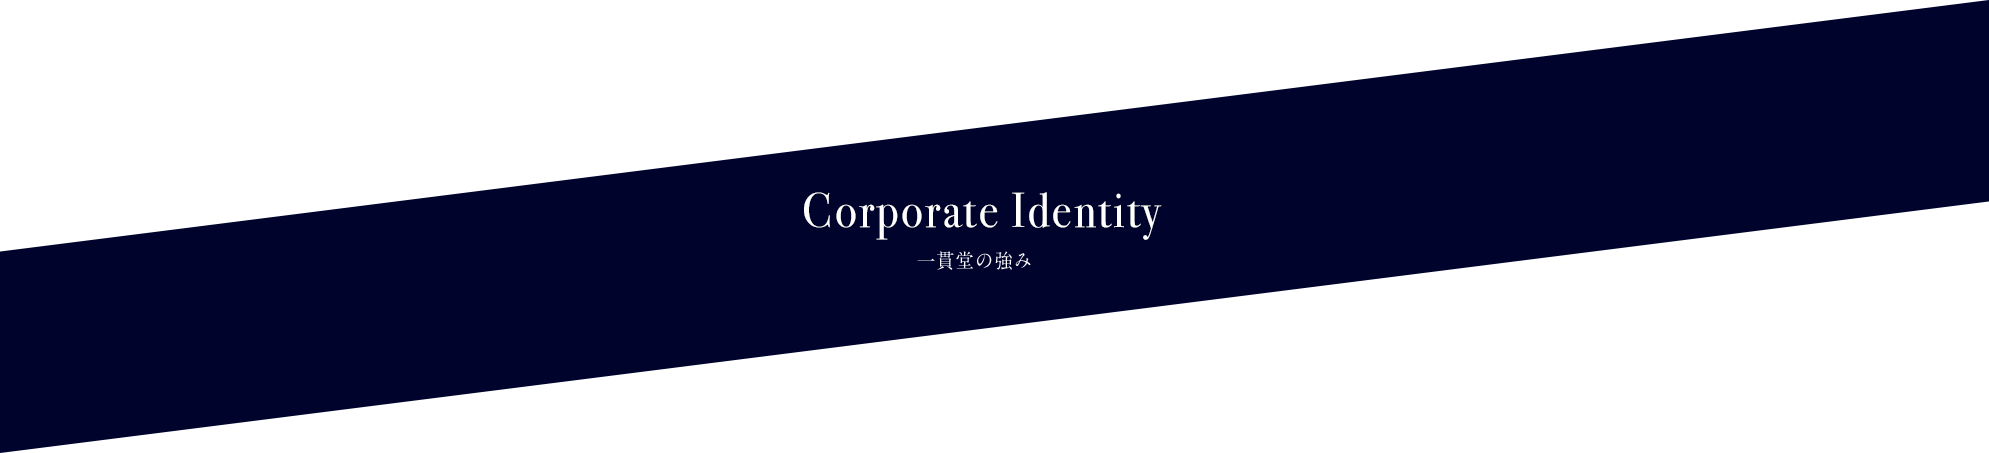 Corporate Identity 一貫堂の強み